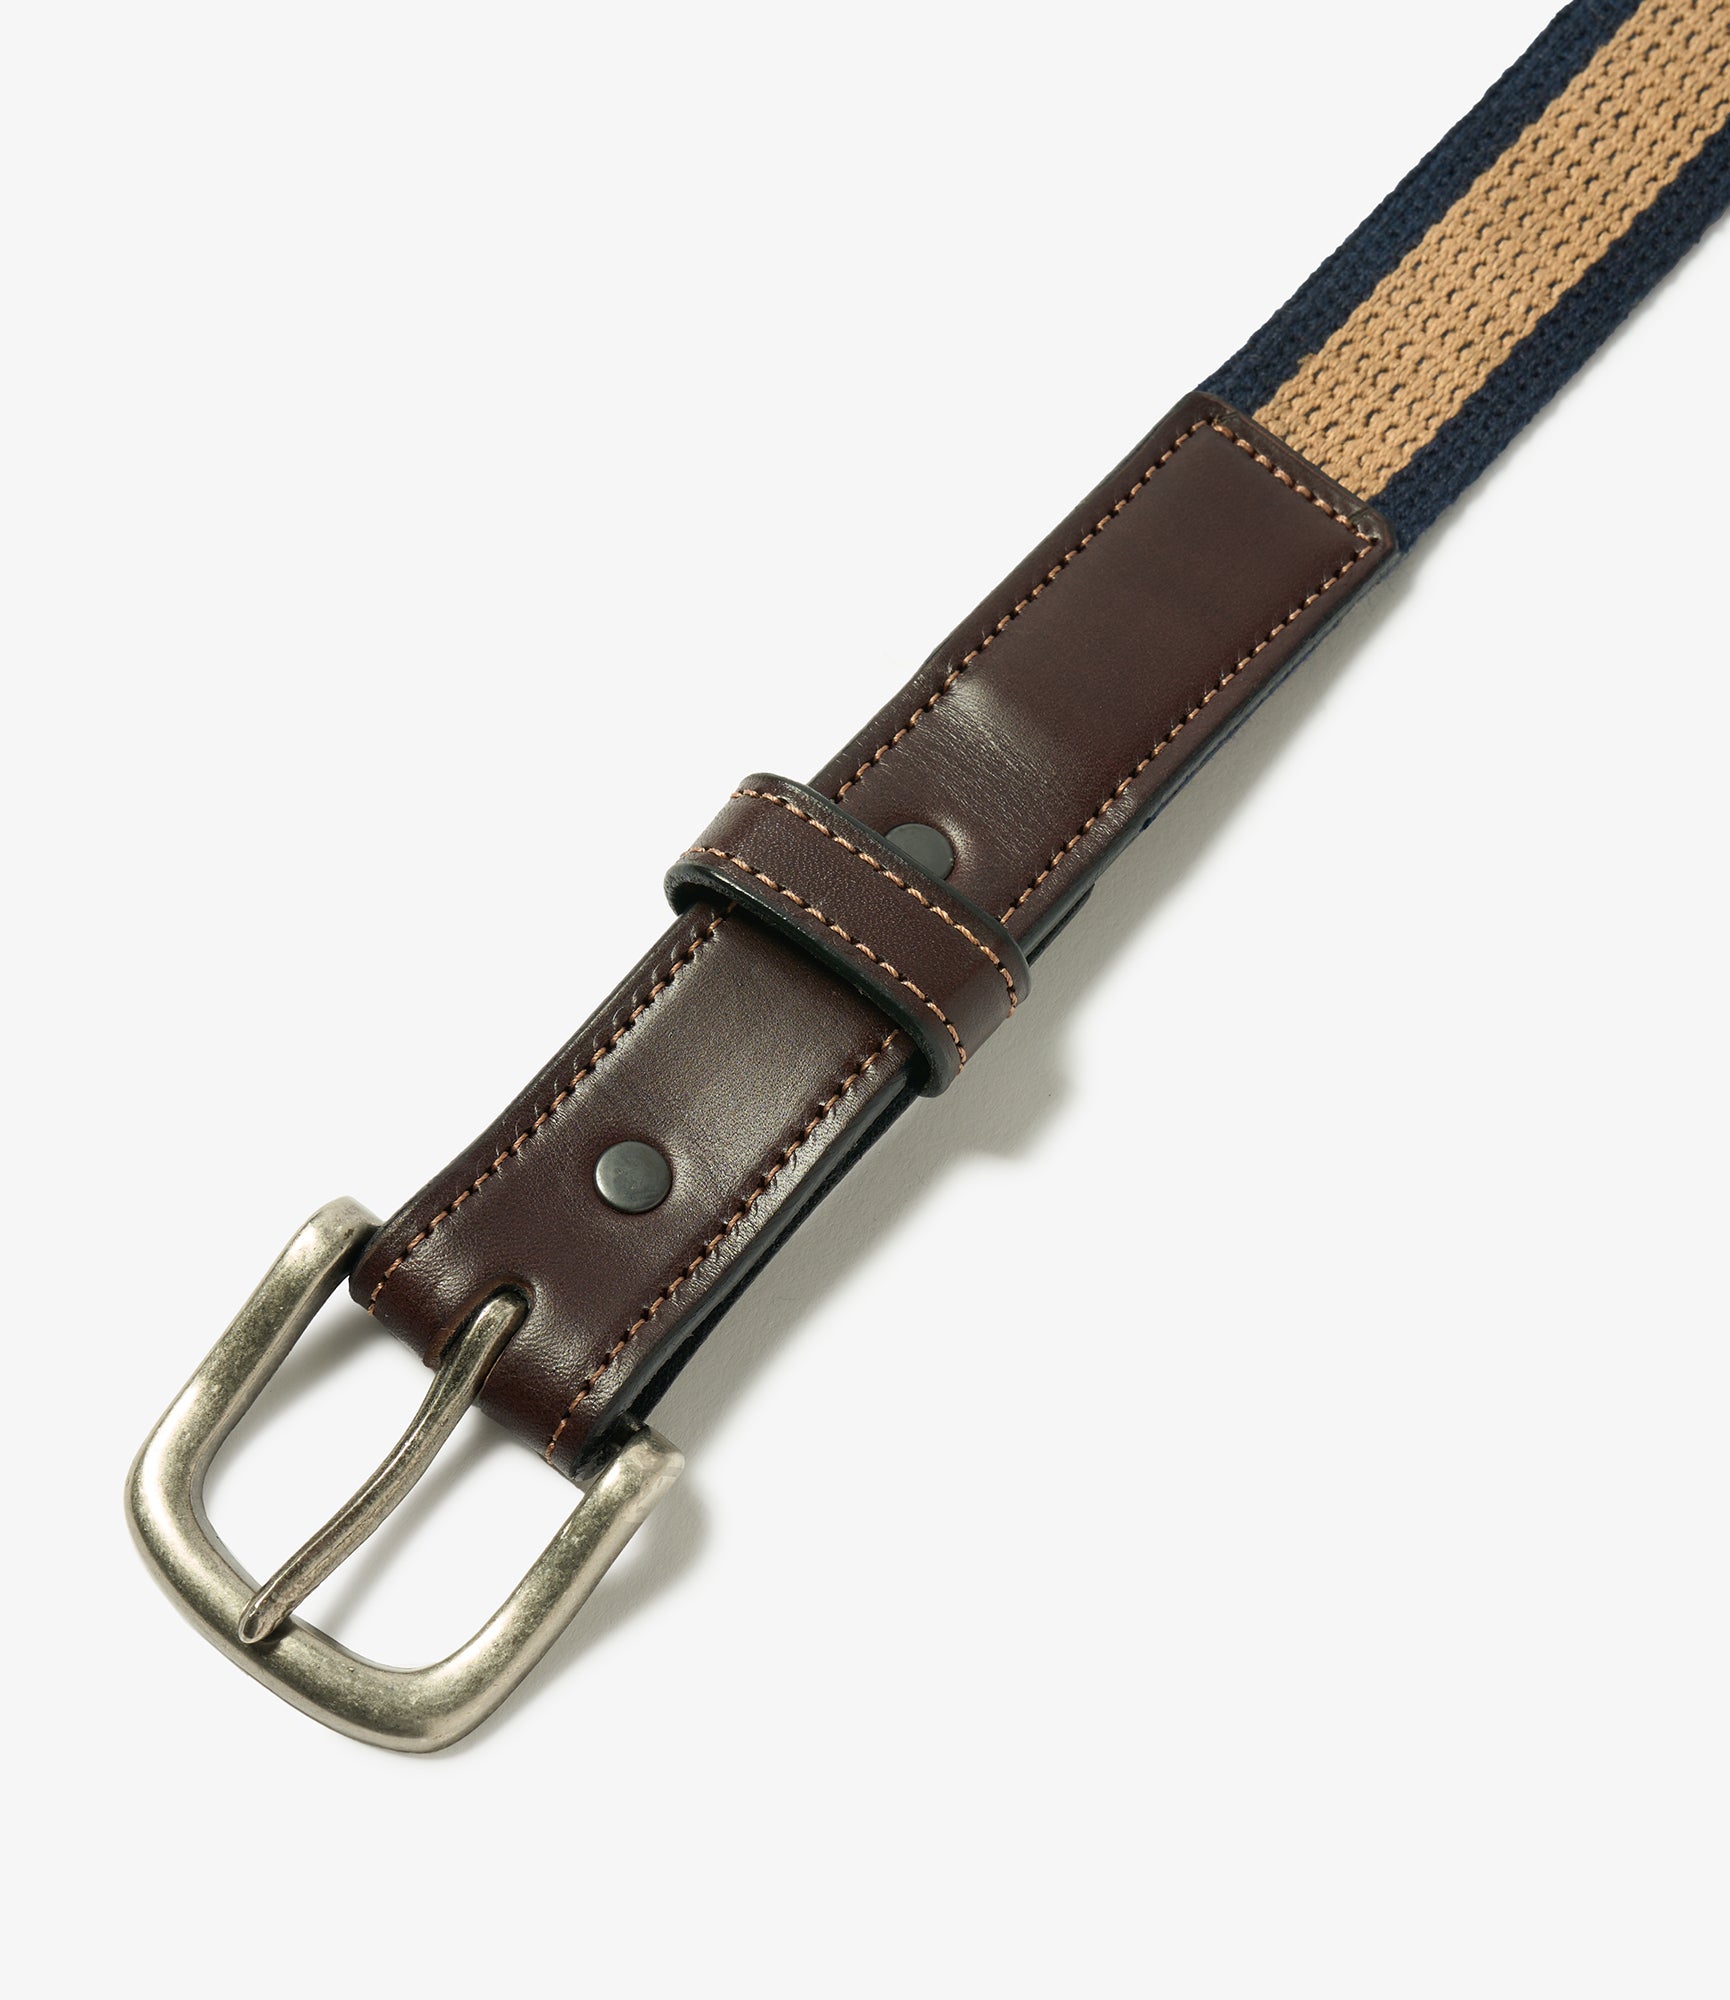 Webbing Belt - Khaki / Navy Stripe